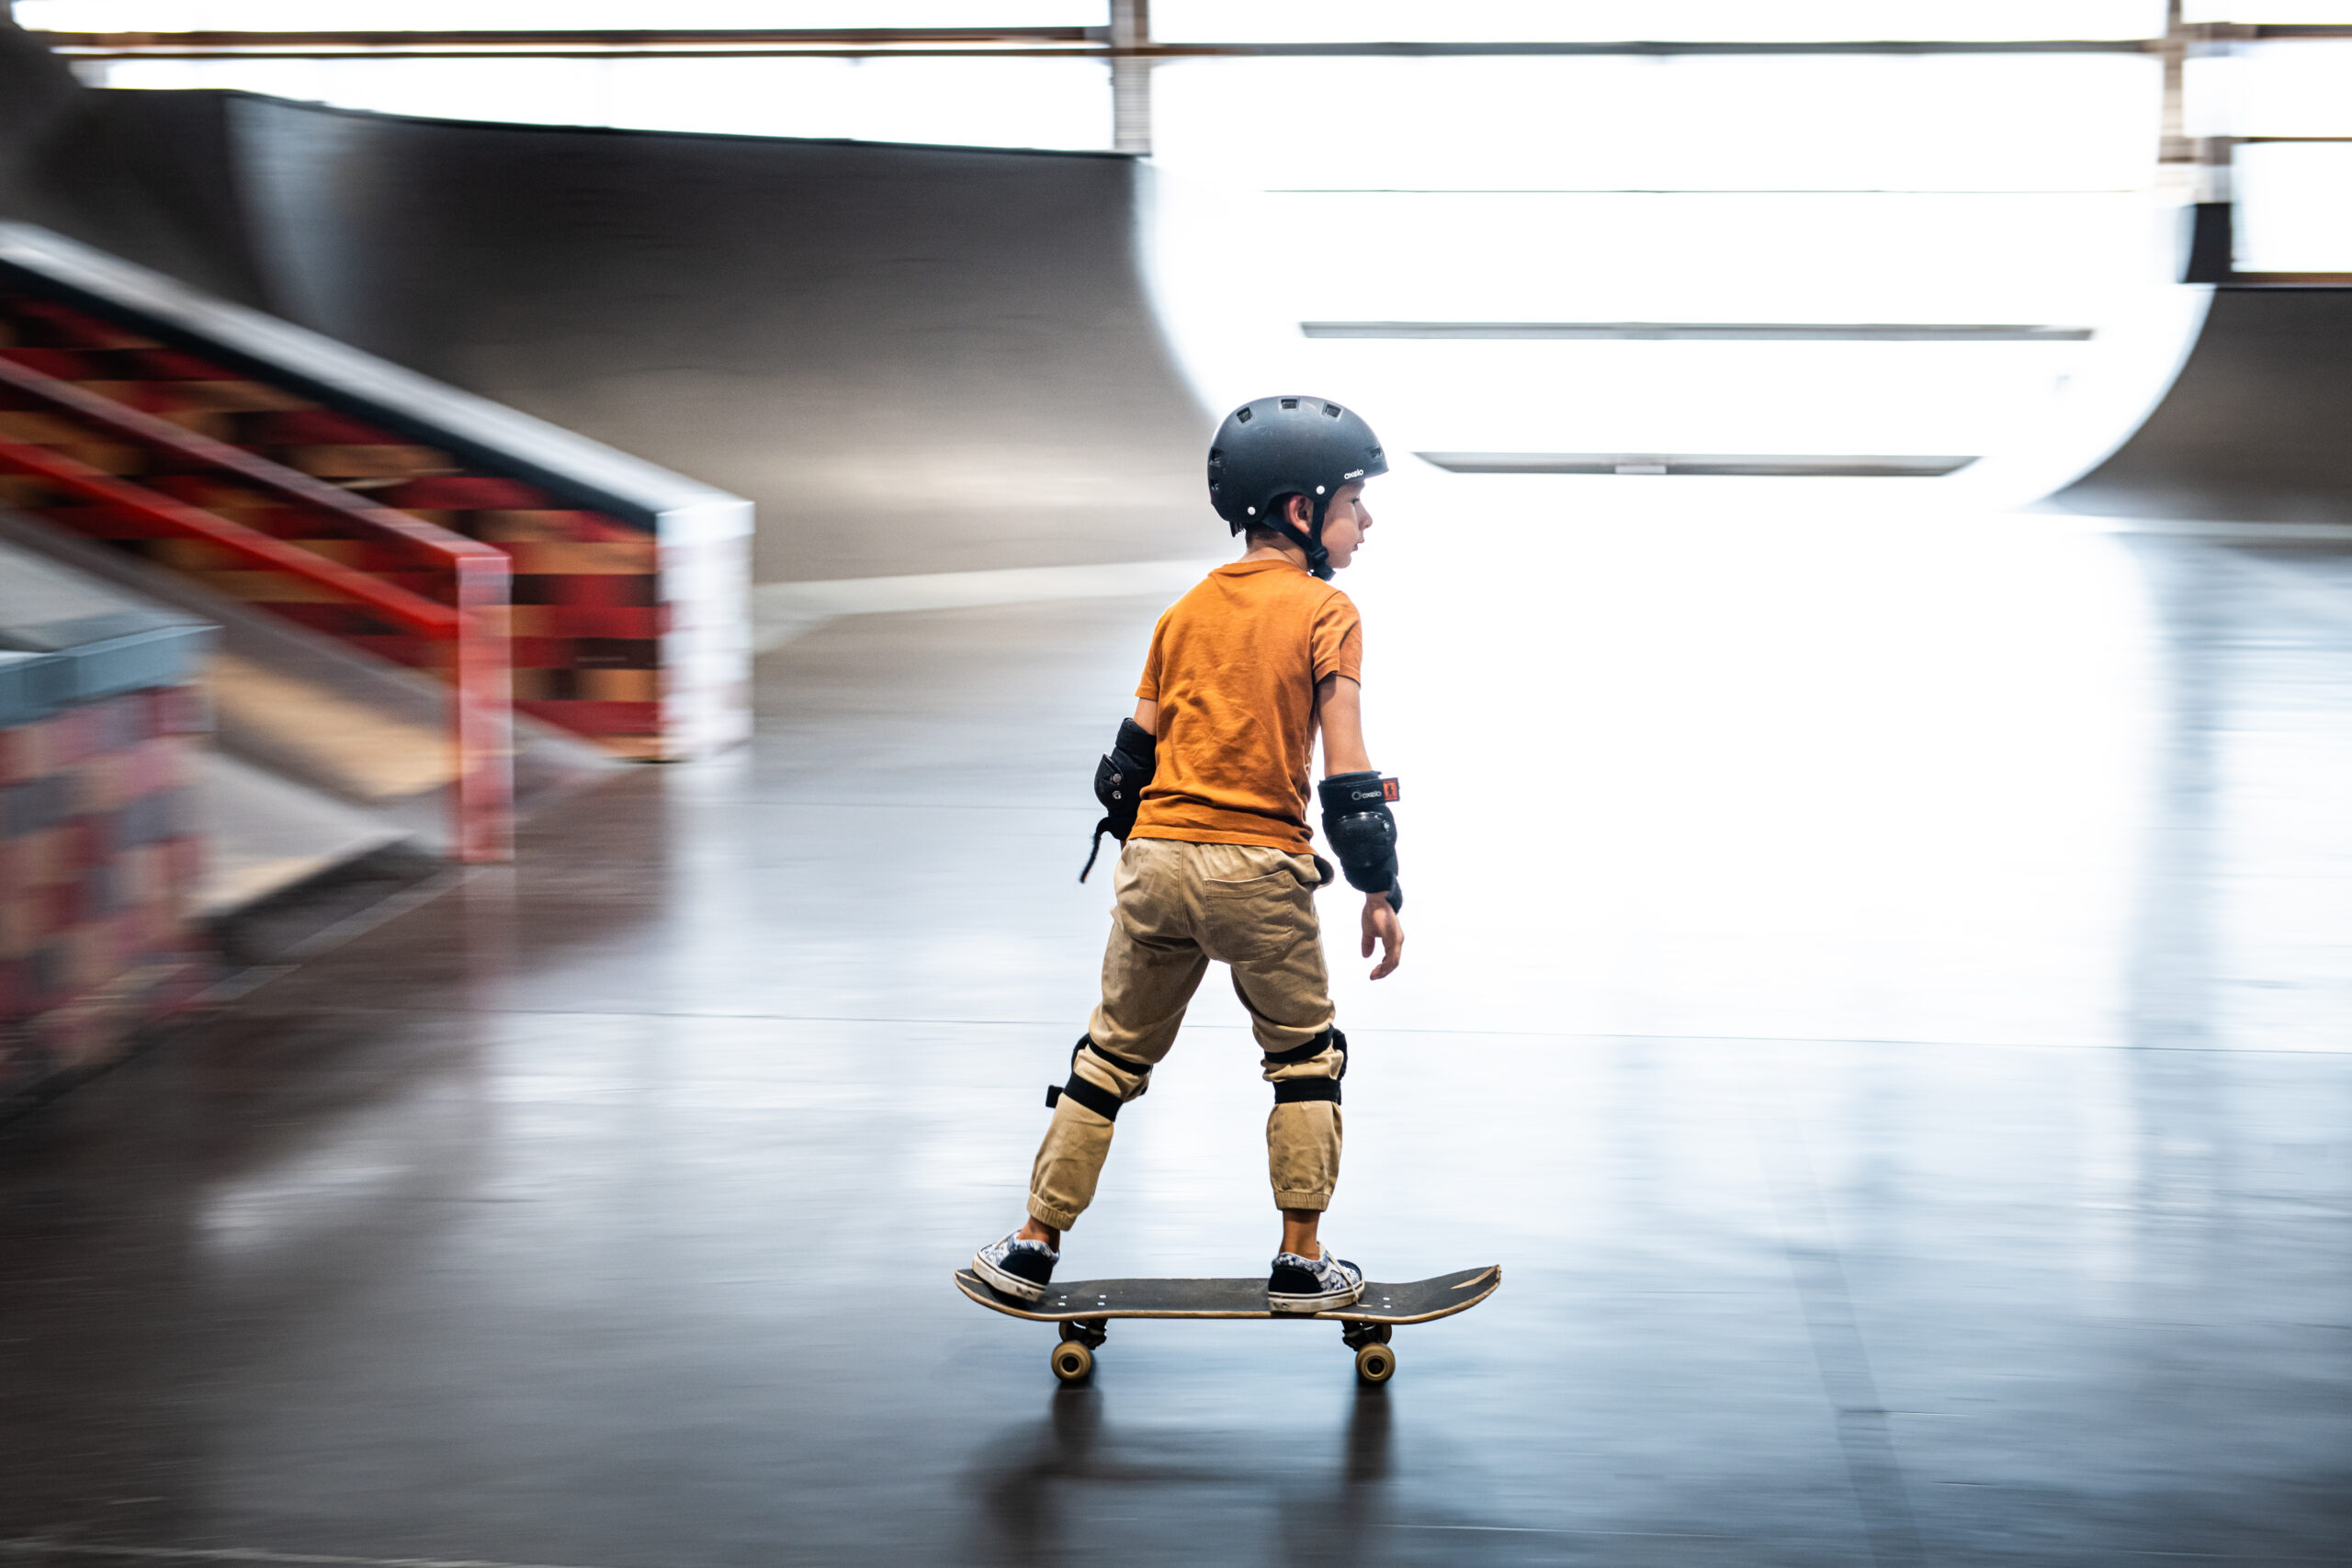 L'apprentissage de la petite fille en roller skate parc d'été